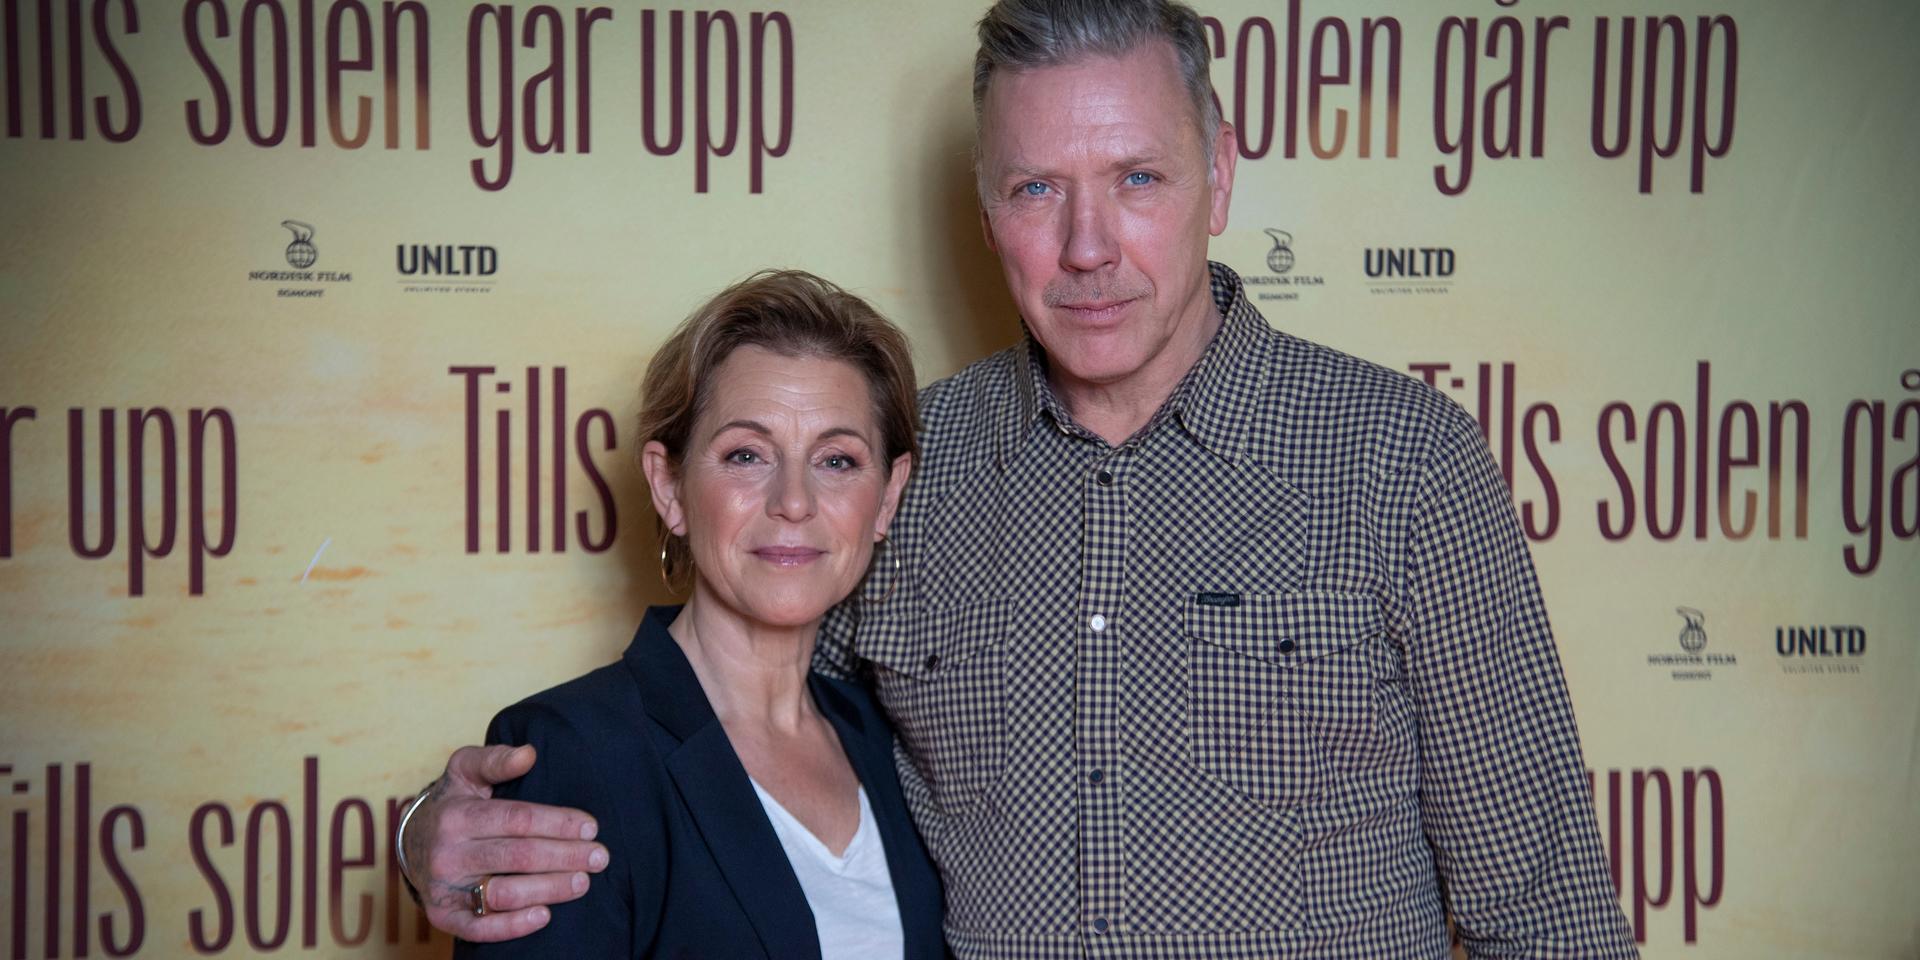 Helen Sjöholm och Mikael Persbrandt spelar ett gift par i Peter Dalles nya film 'Tills solen går upp'.